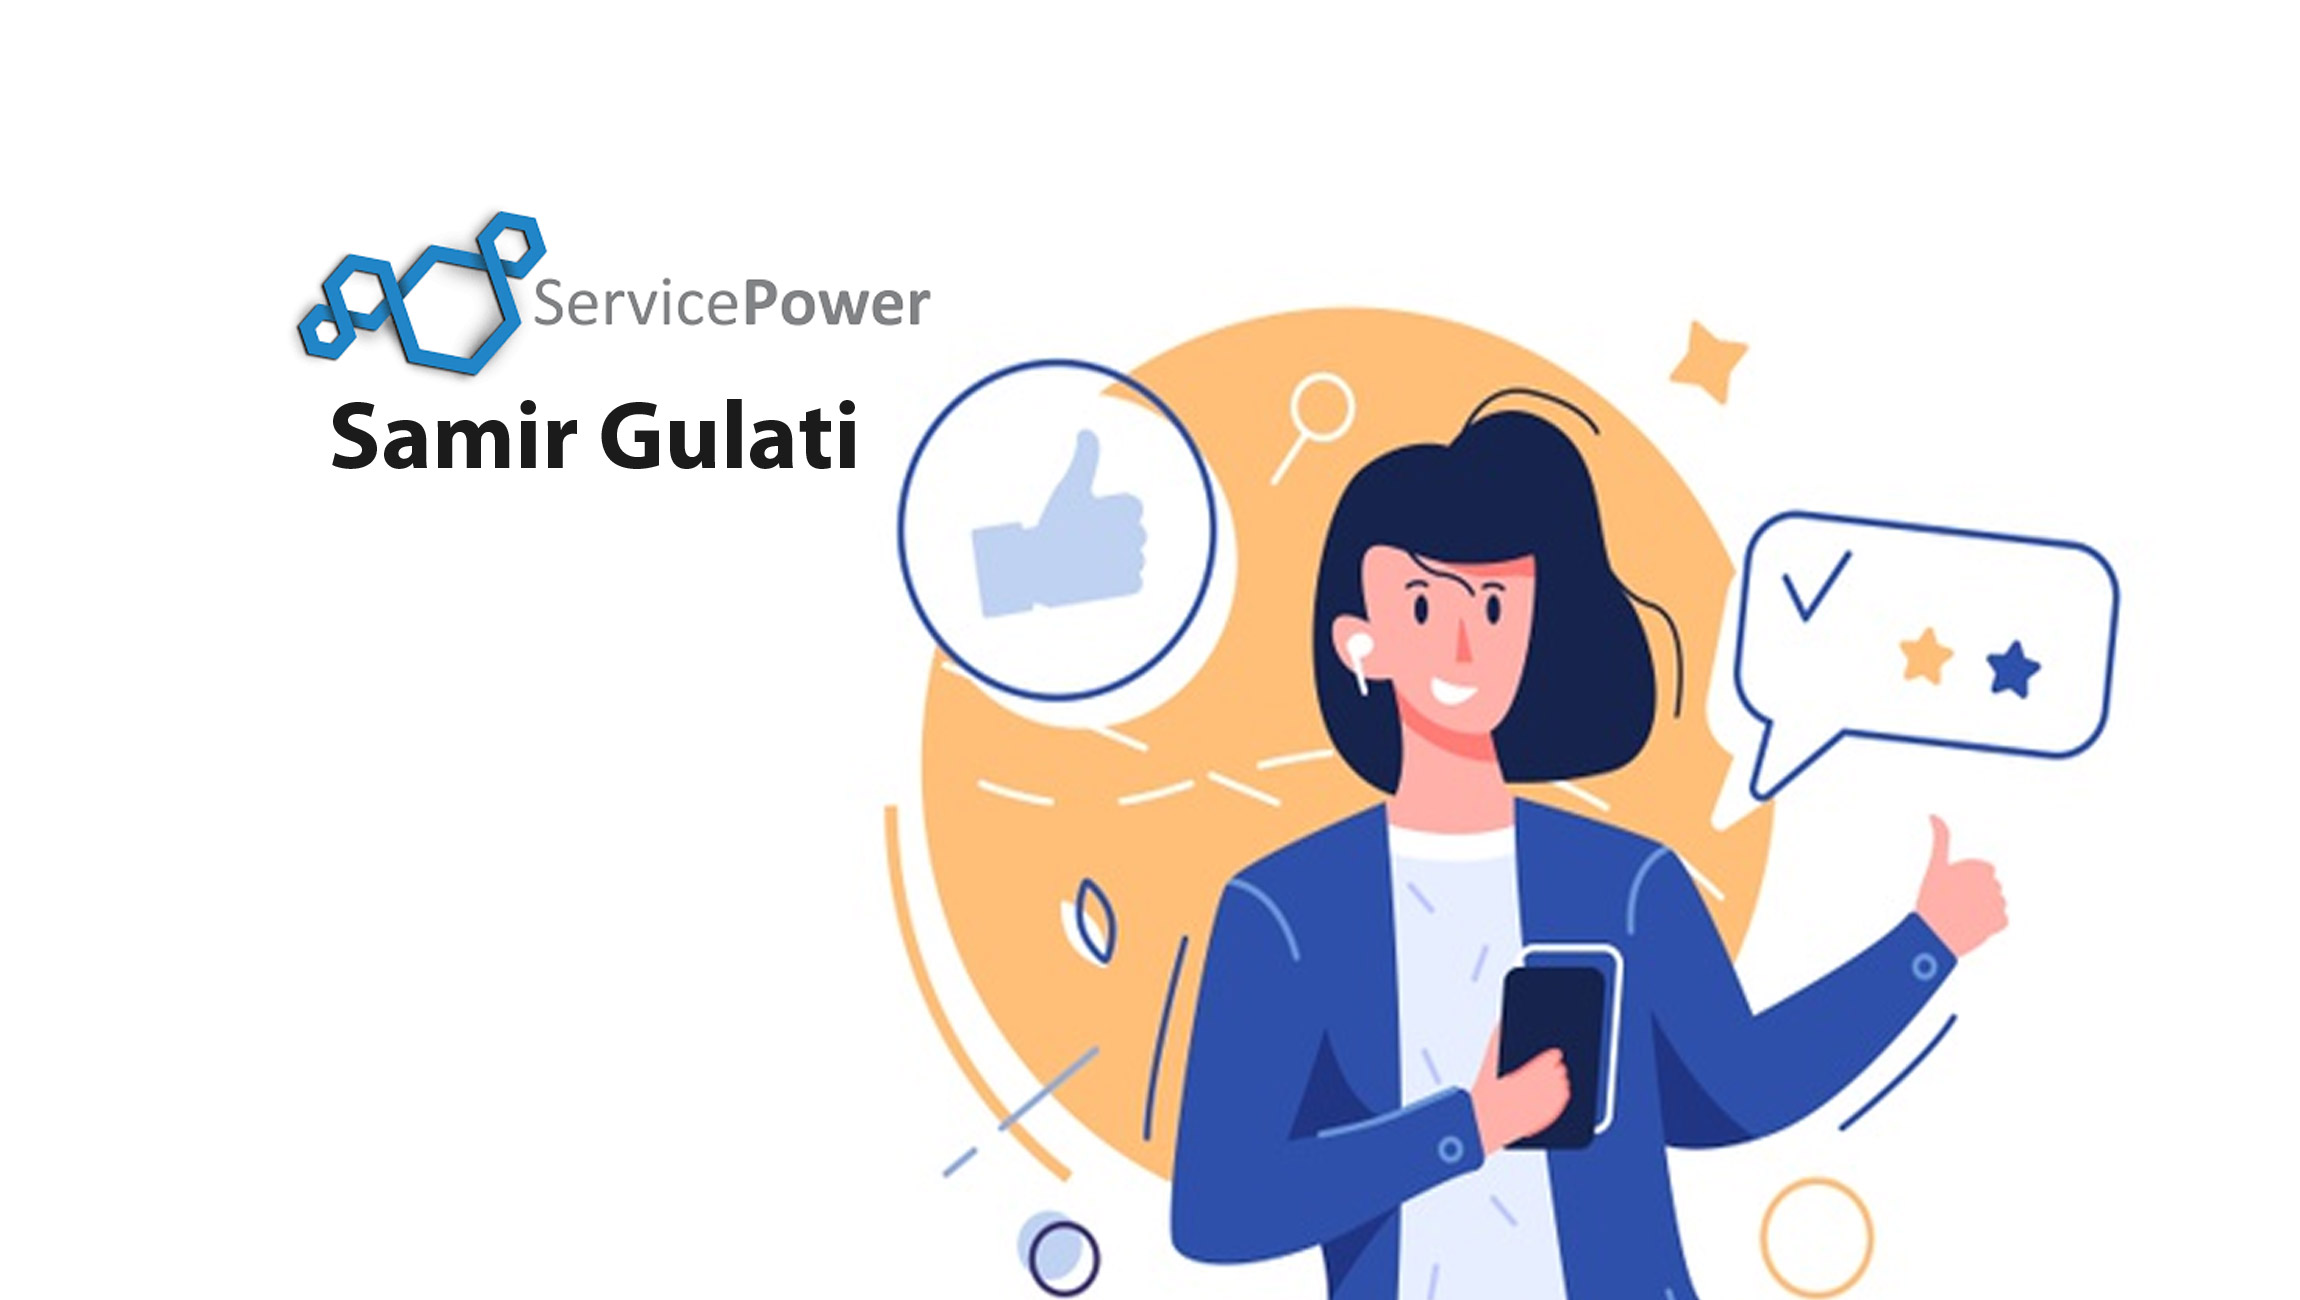 Samir-Gulati_SalesTechStar-Samir_Gulati-guest-ServicePower-12July